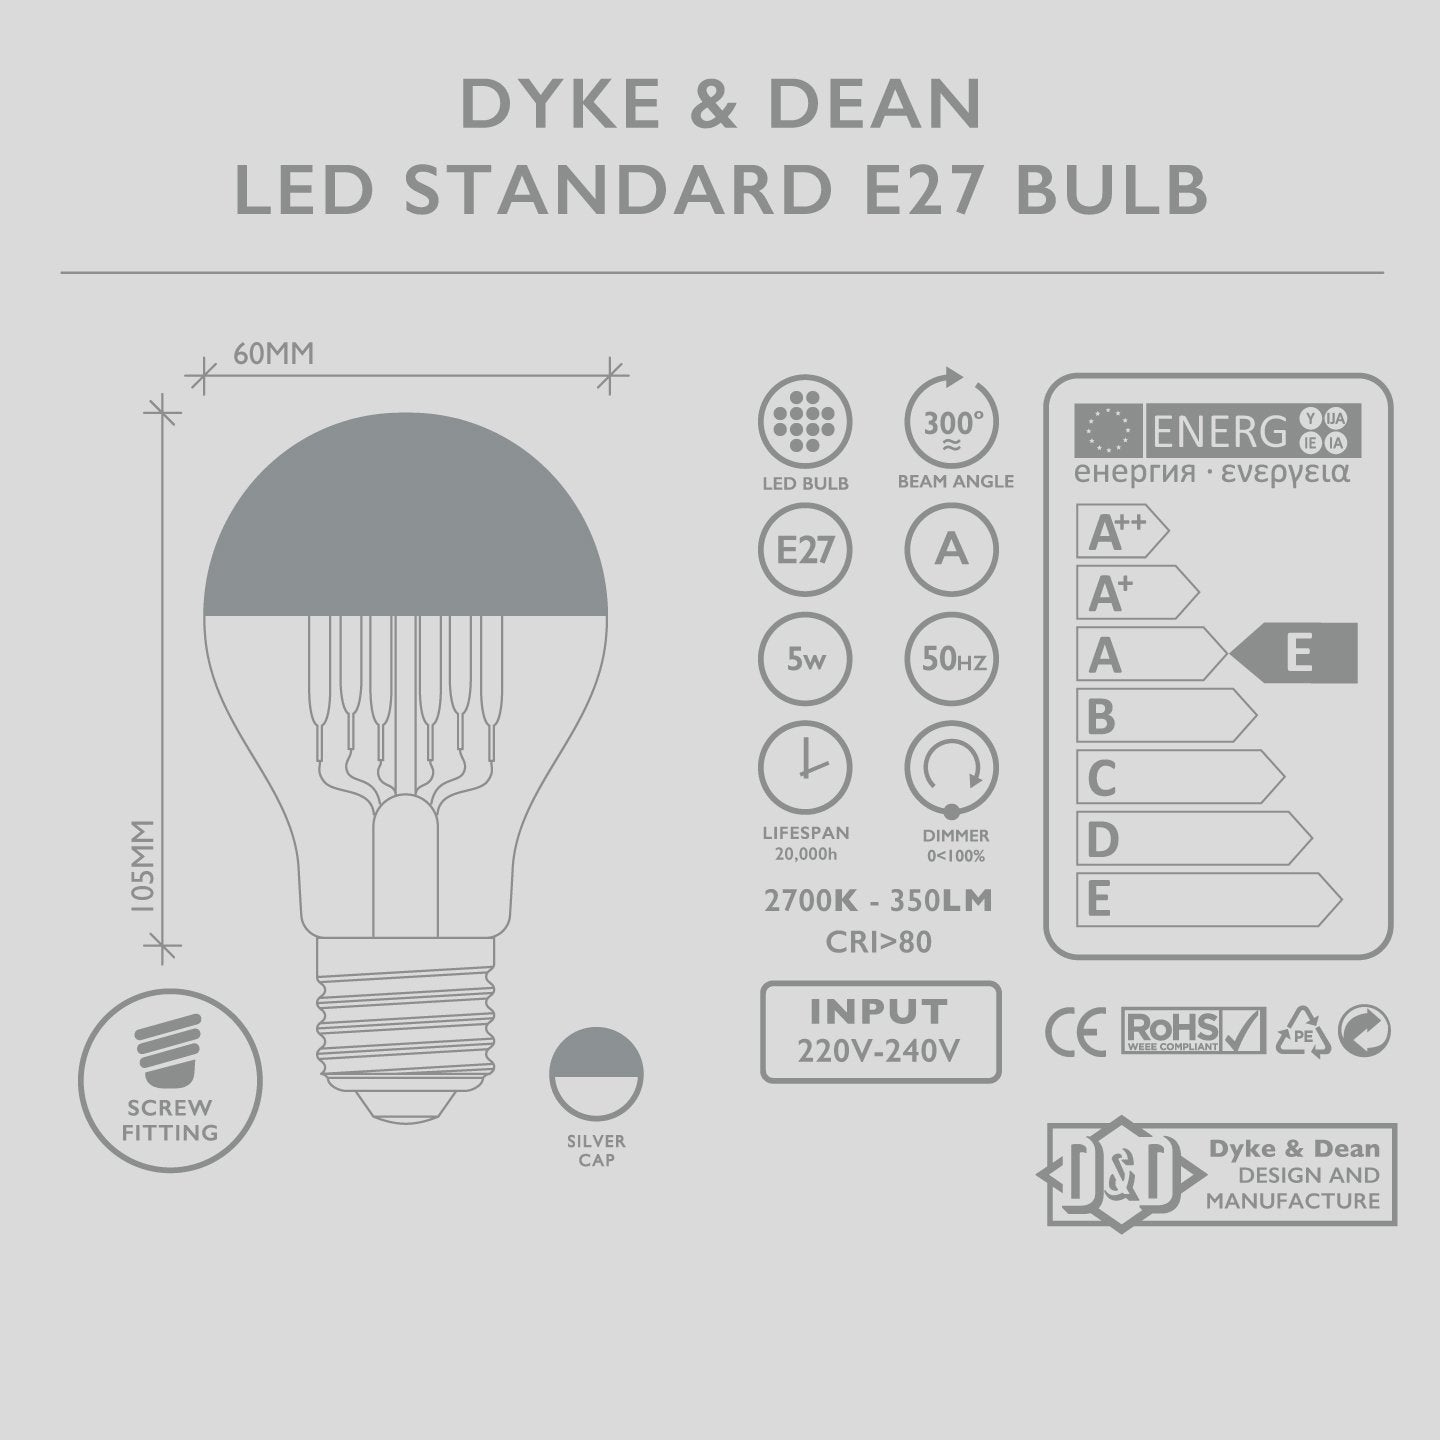 DYKE & DEAN LED SILVER CAP STANDARD E27 BULB - DYKE & DEAN